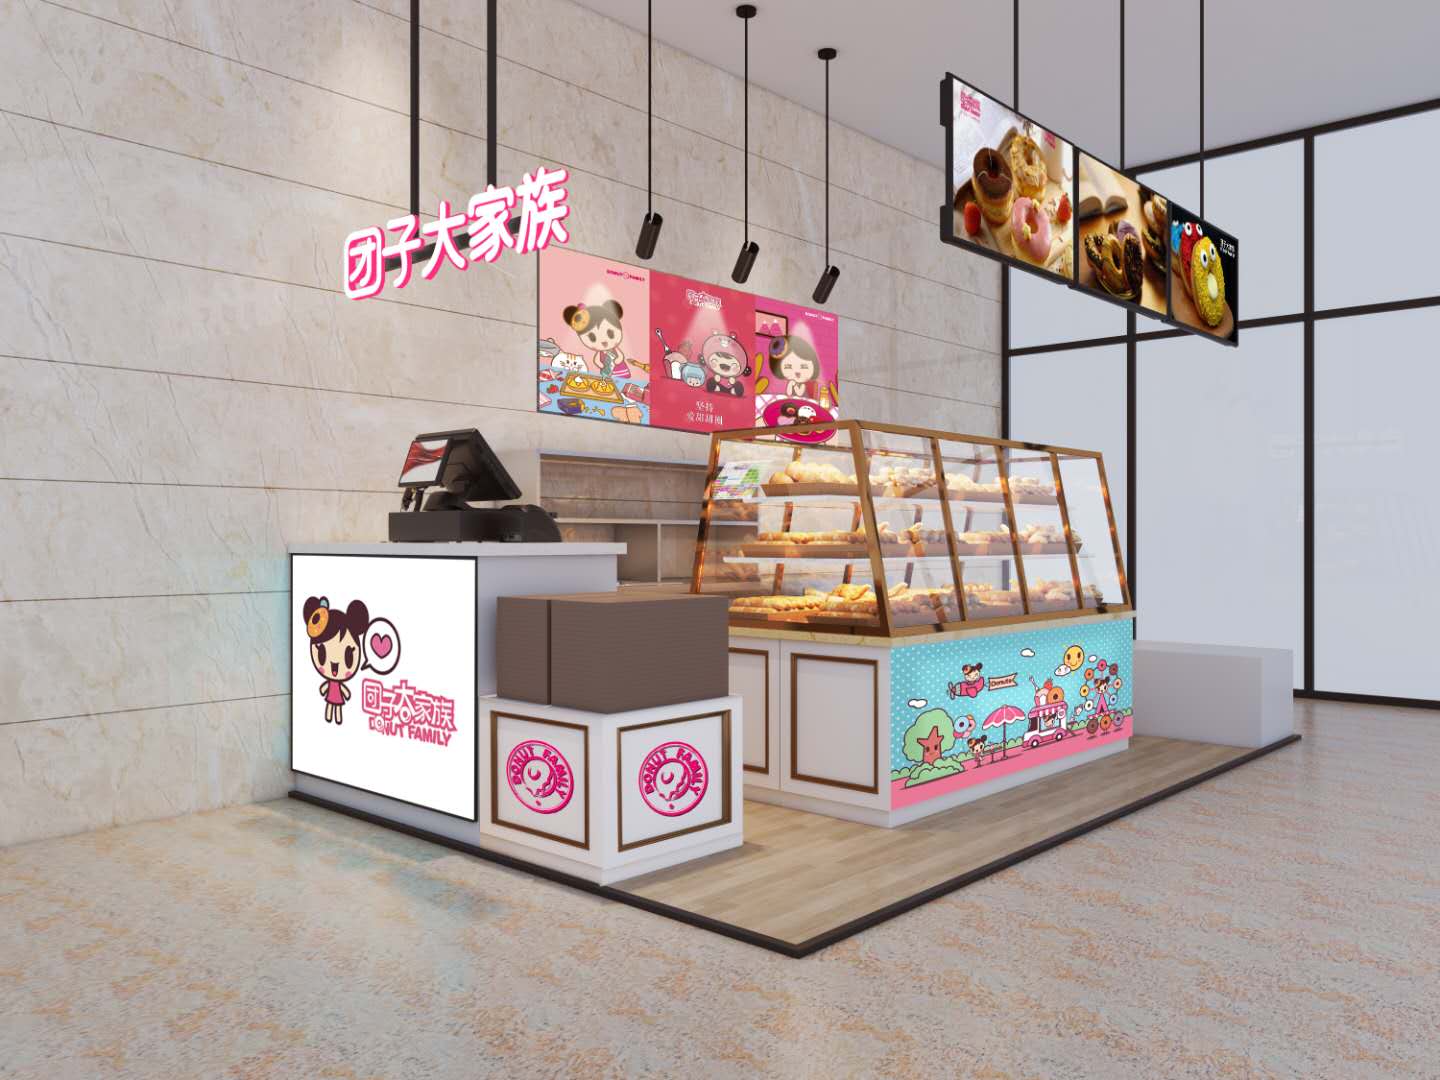 创业新模式-团子大家族甜甜圈加盟店七月三店同(图2)